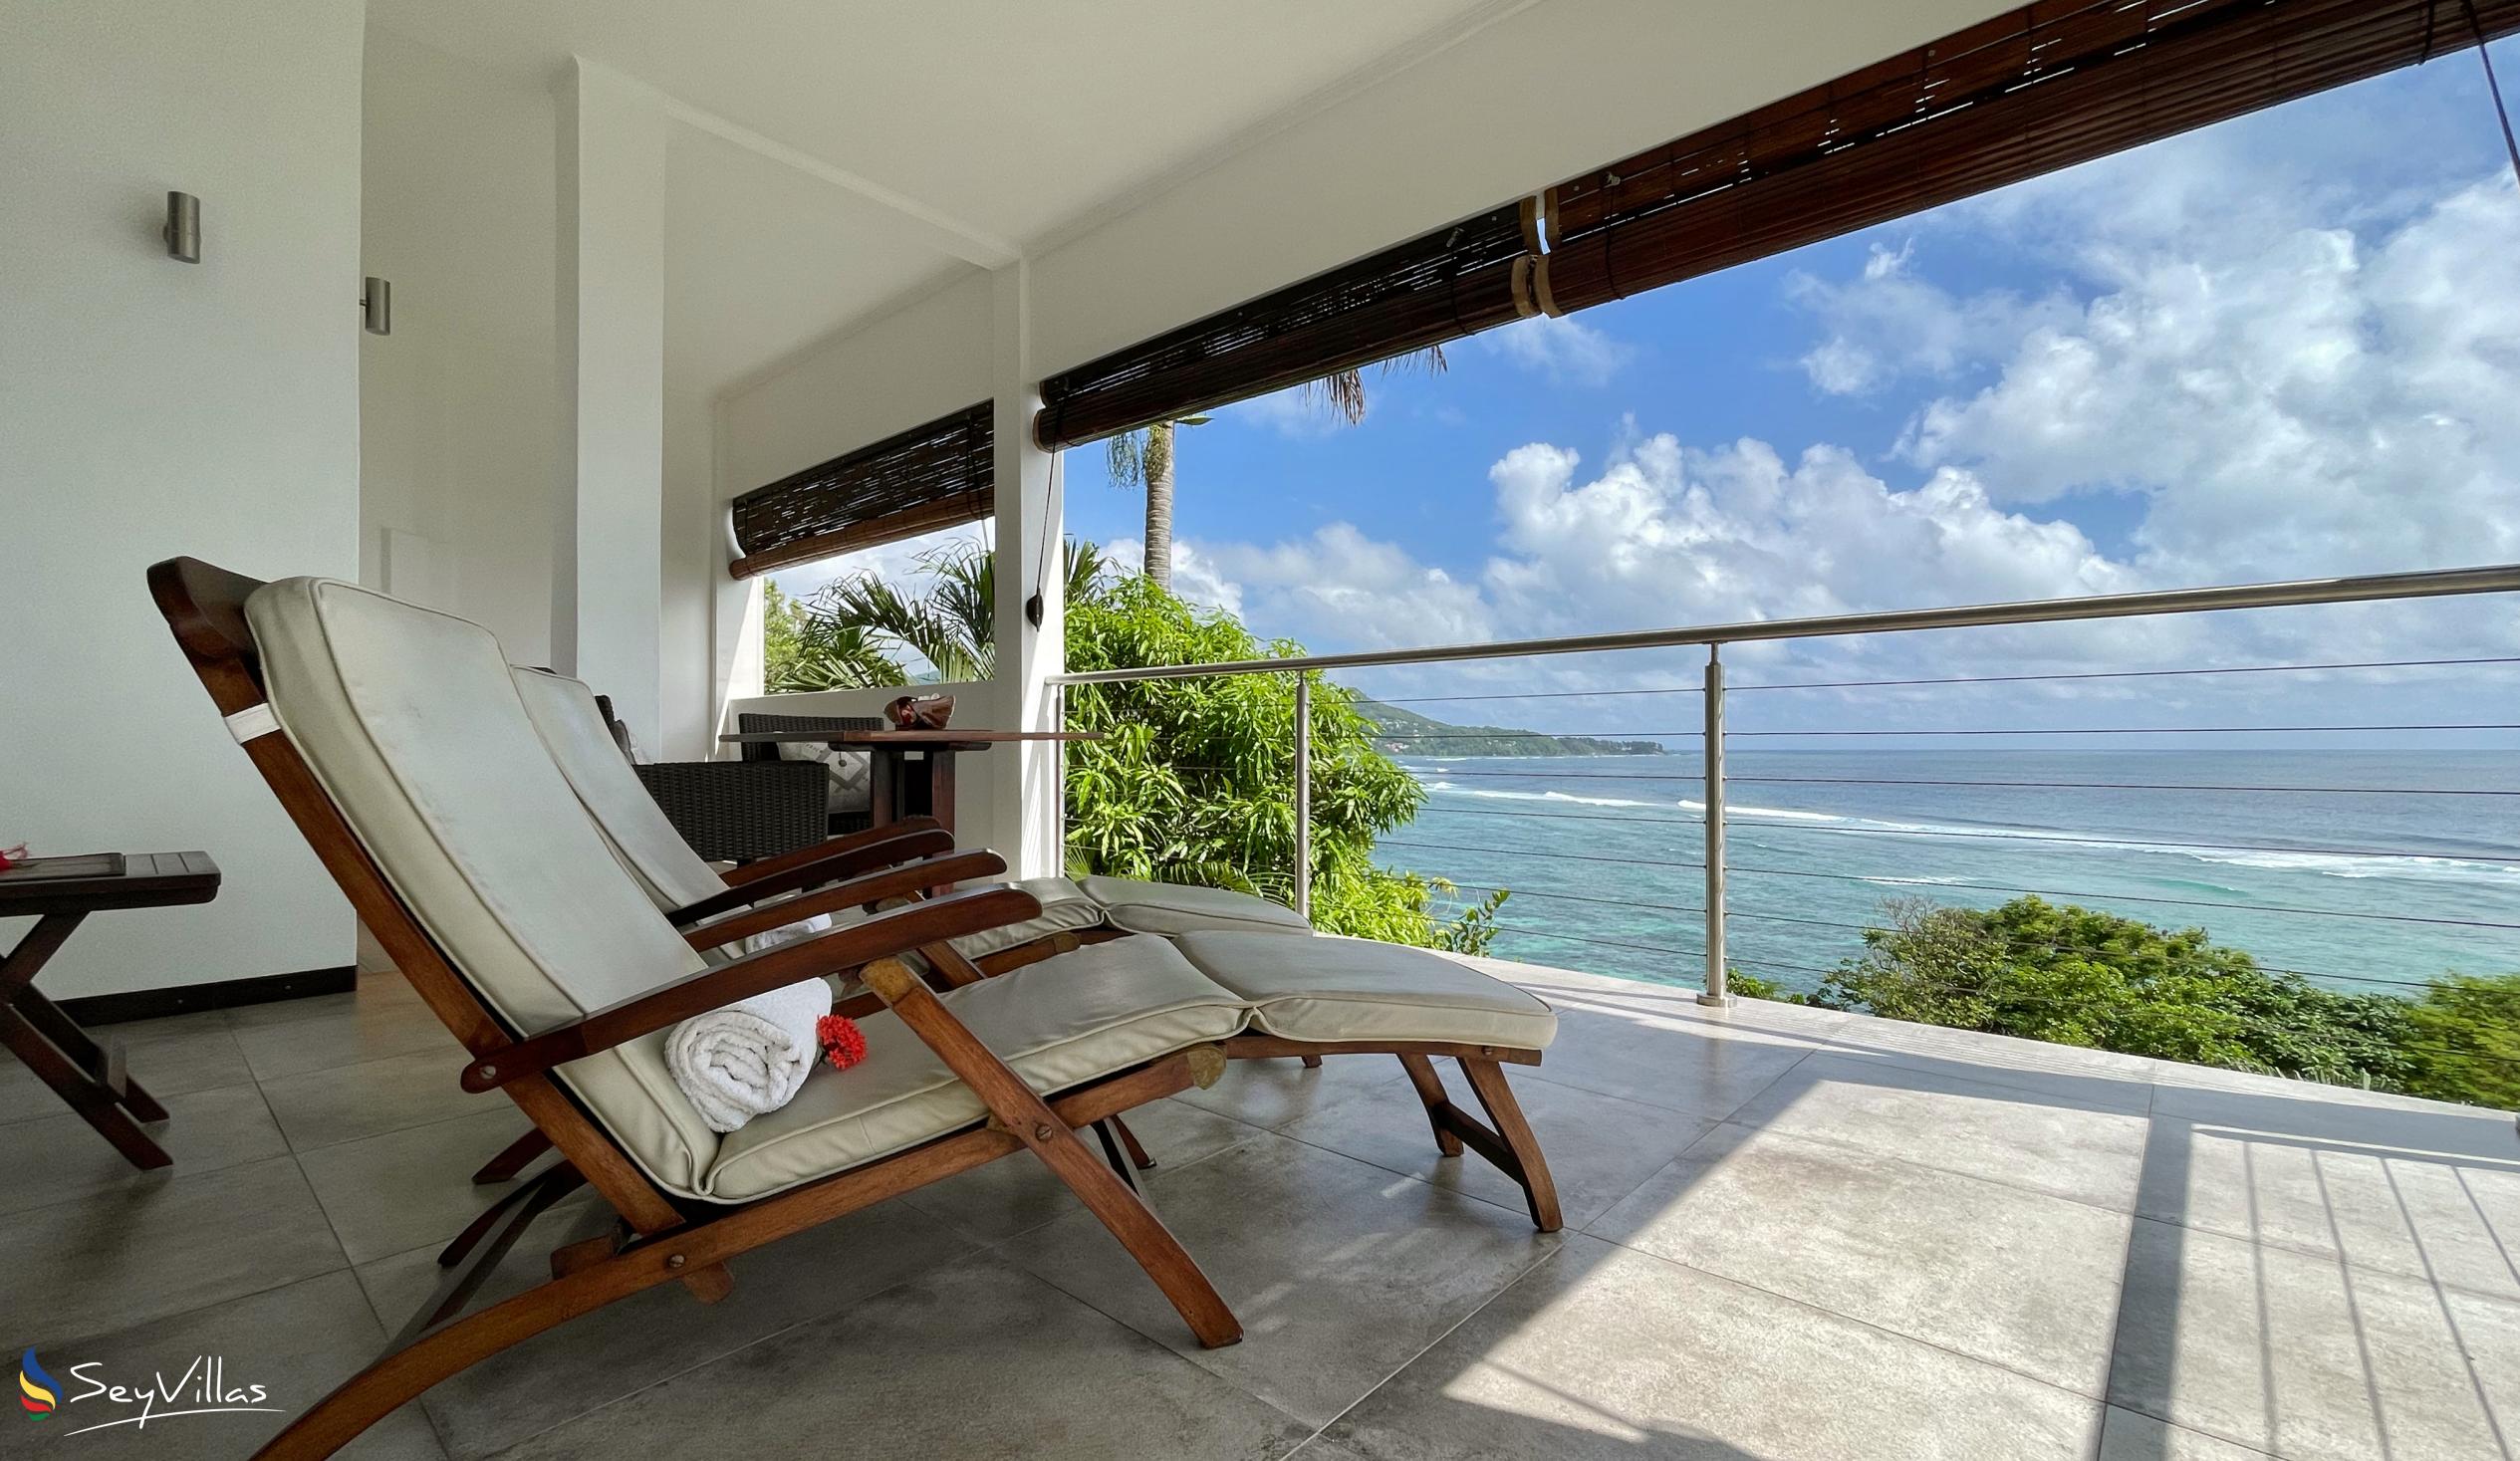 Photo 101: Chalets Bougainville - Ground Floor Apartment Villa Lemon - Mahé (Seychelles)